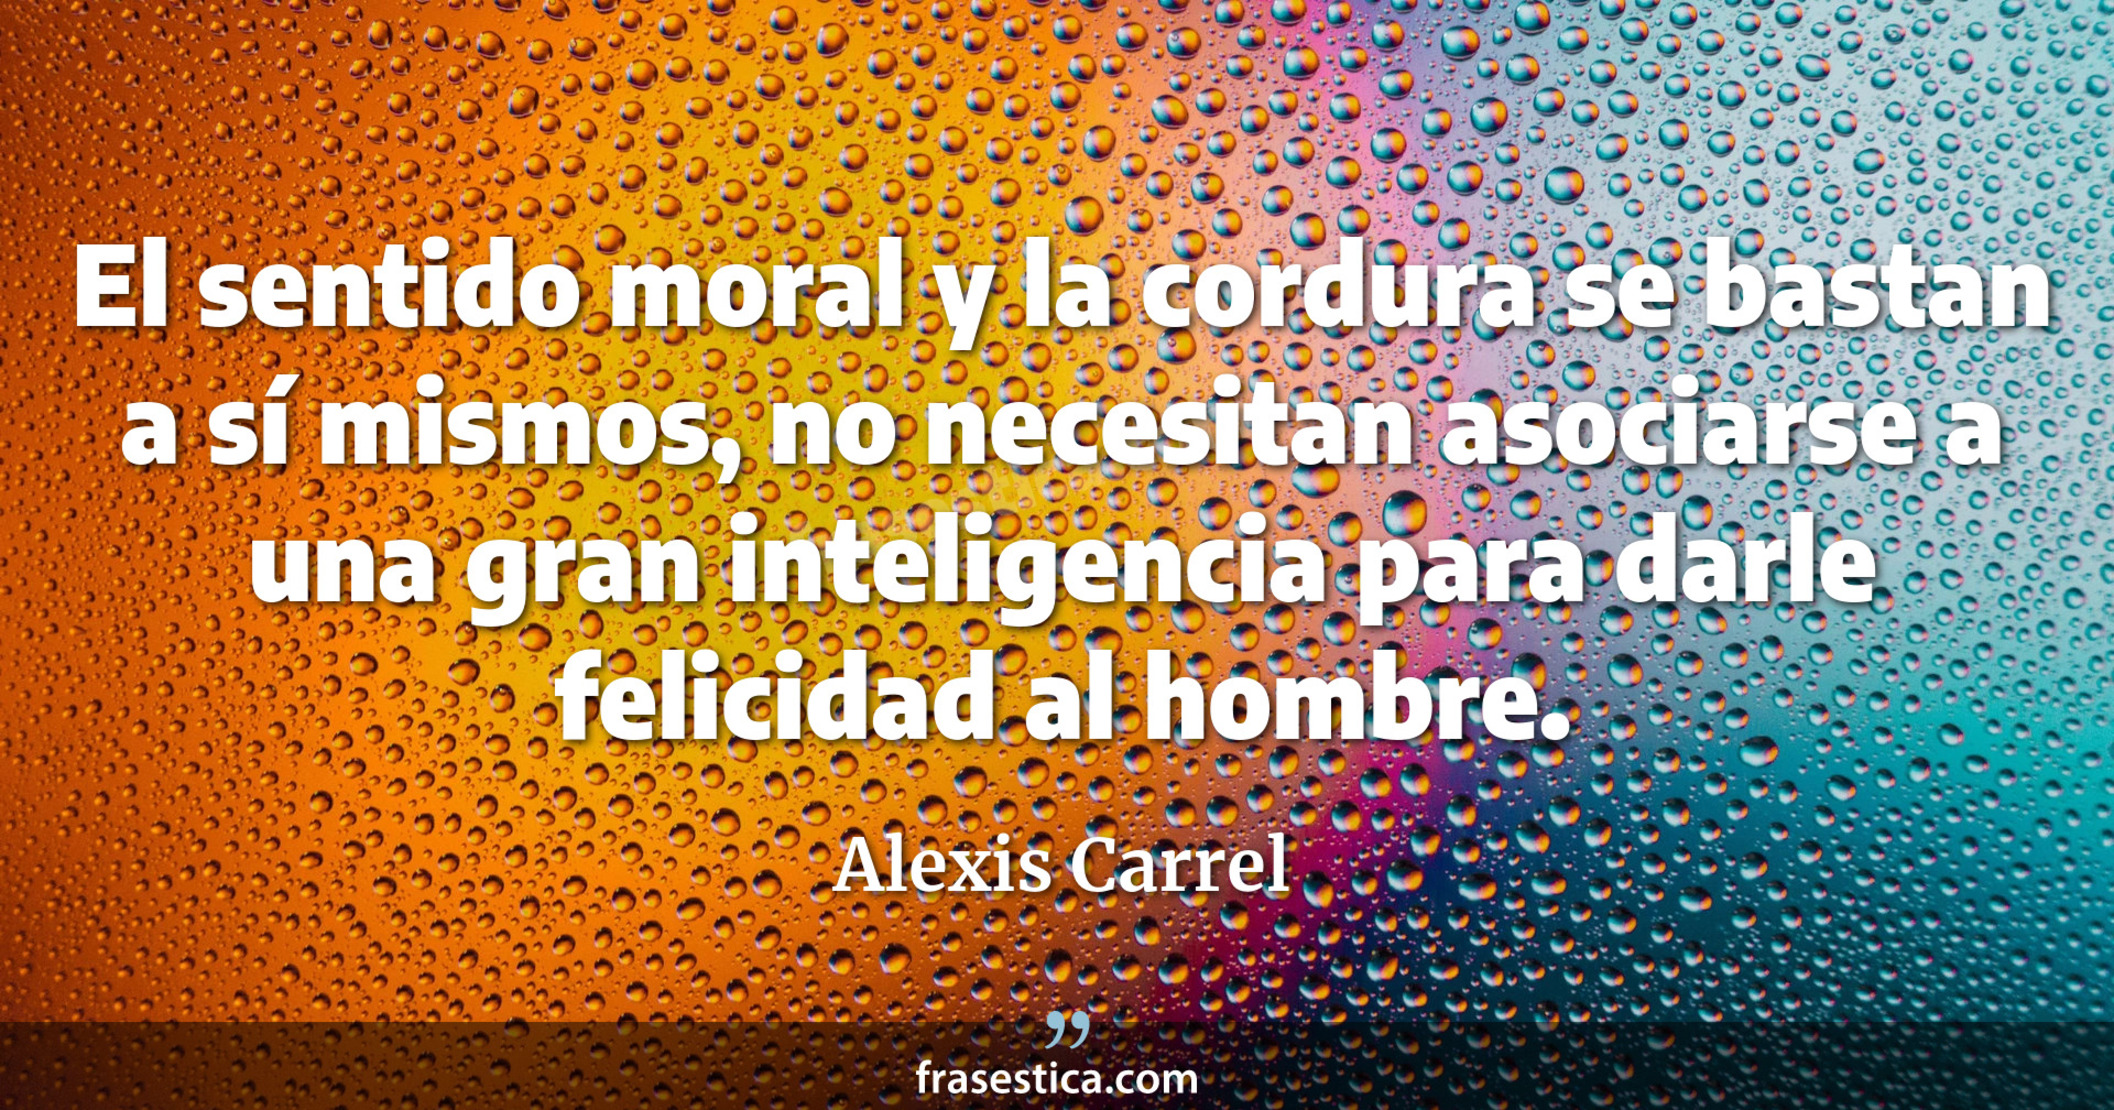 El sentido moral y la cordura se bastan a sí mismos, no necesitan asociarse a una gran inteligencia para darle felicidad al hombre. - Alexis Carrel